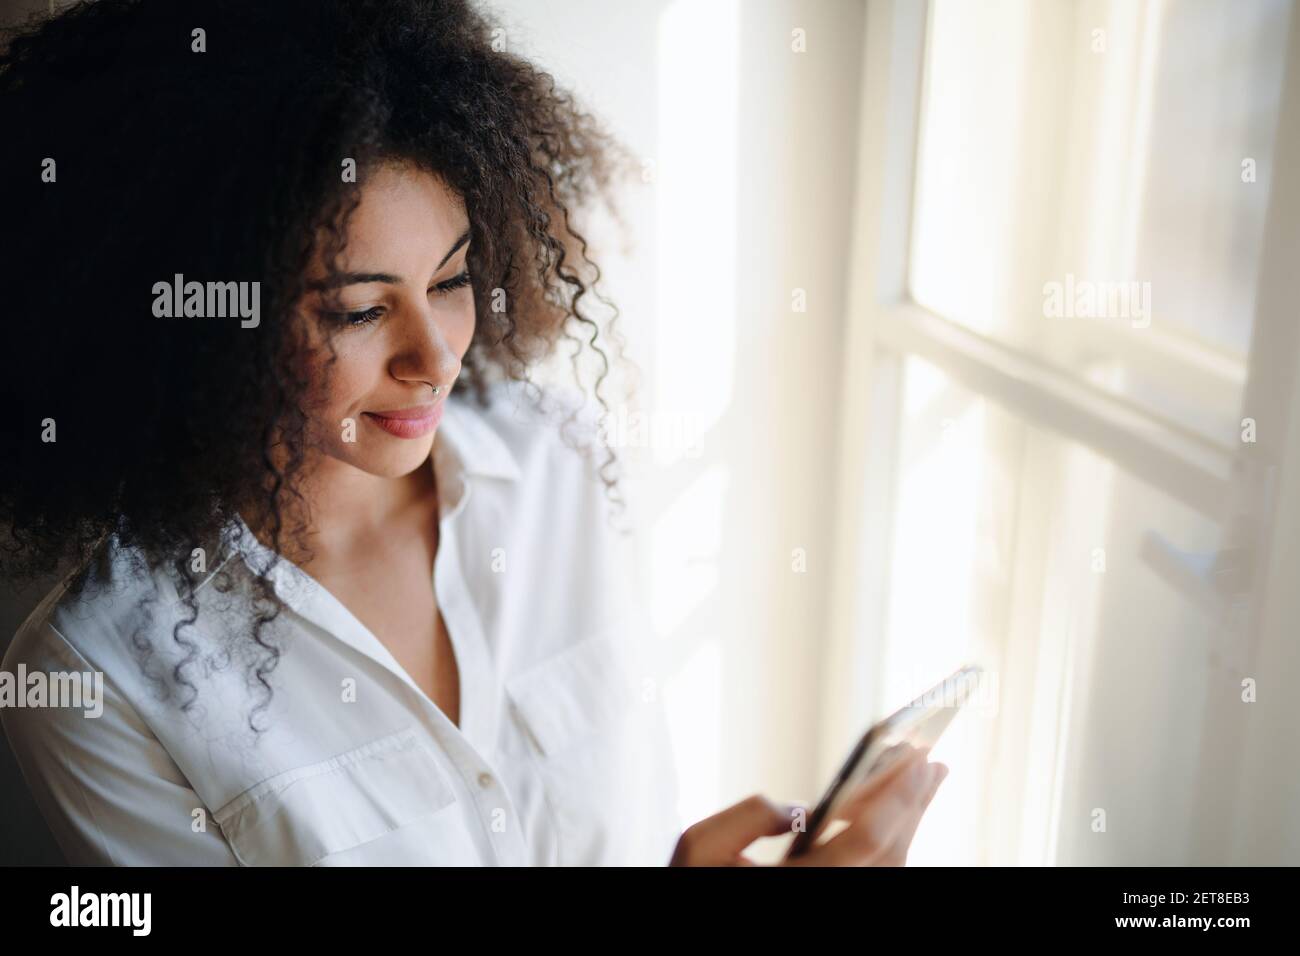 Ritratto di giovane donna sul davanzale della finestra all'interno di casa, utilizzando lo smartphone. Foto Stock